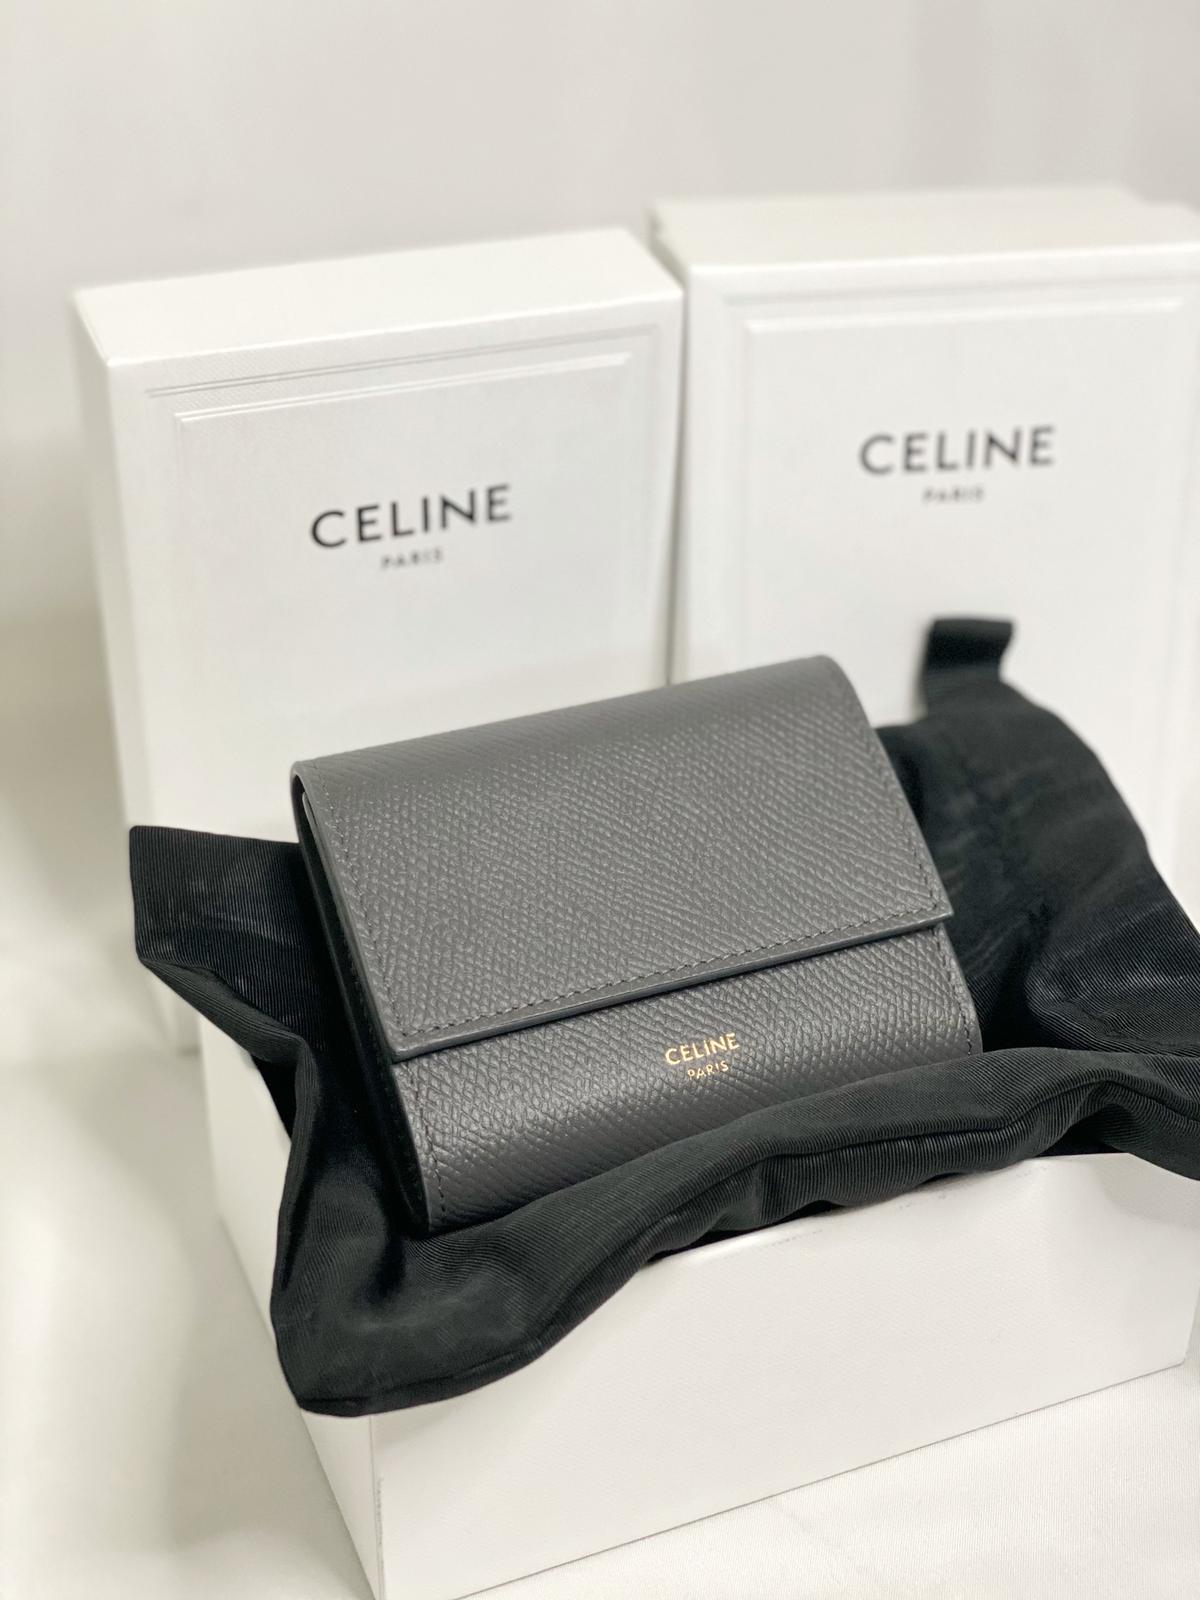 Celine Trifold Wallet in Grained Calfskin